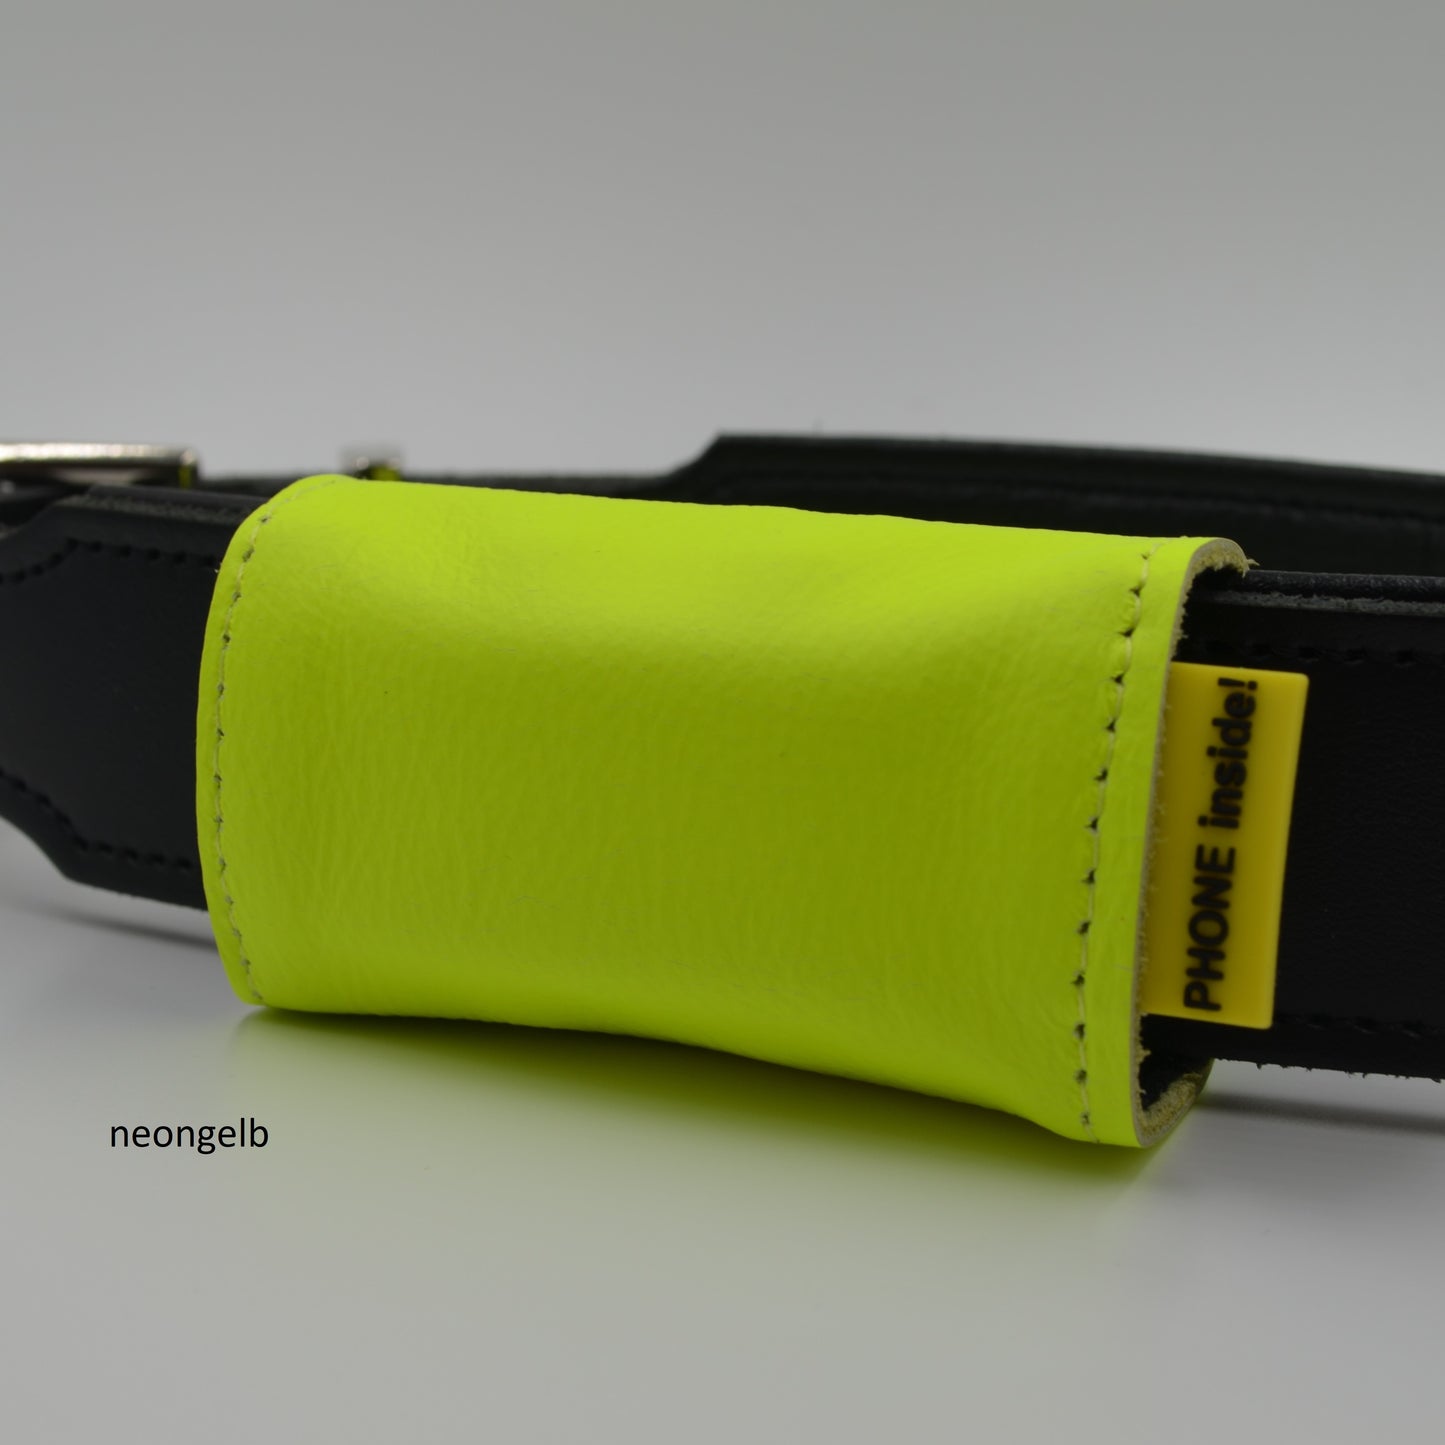 josi.li GPS Befestigung: Hochwertige Tracker Tasche aus Leder mit Nylon kombiniert für Dog 4 - Aktive Hunde - Sonderfarben - Sicherer Verschluss